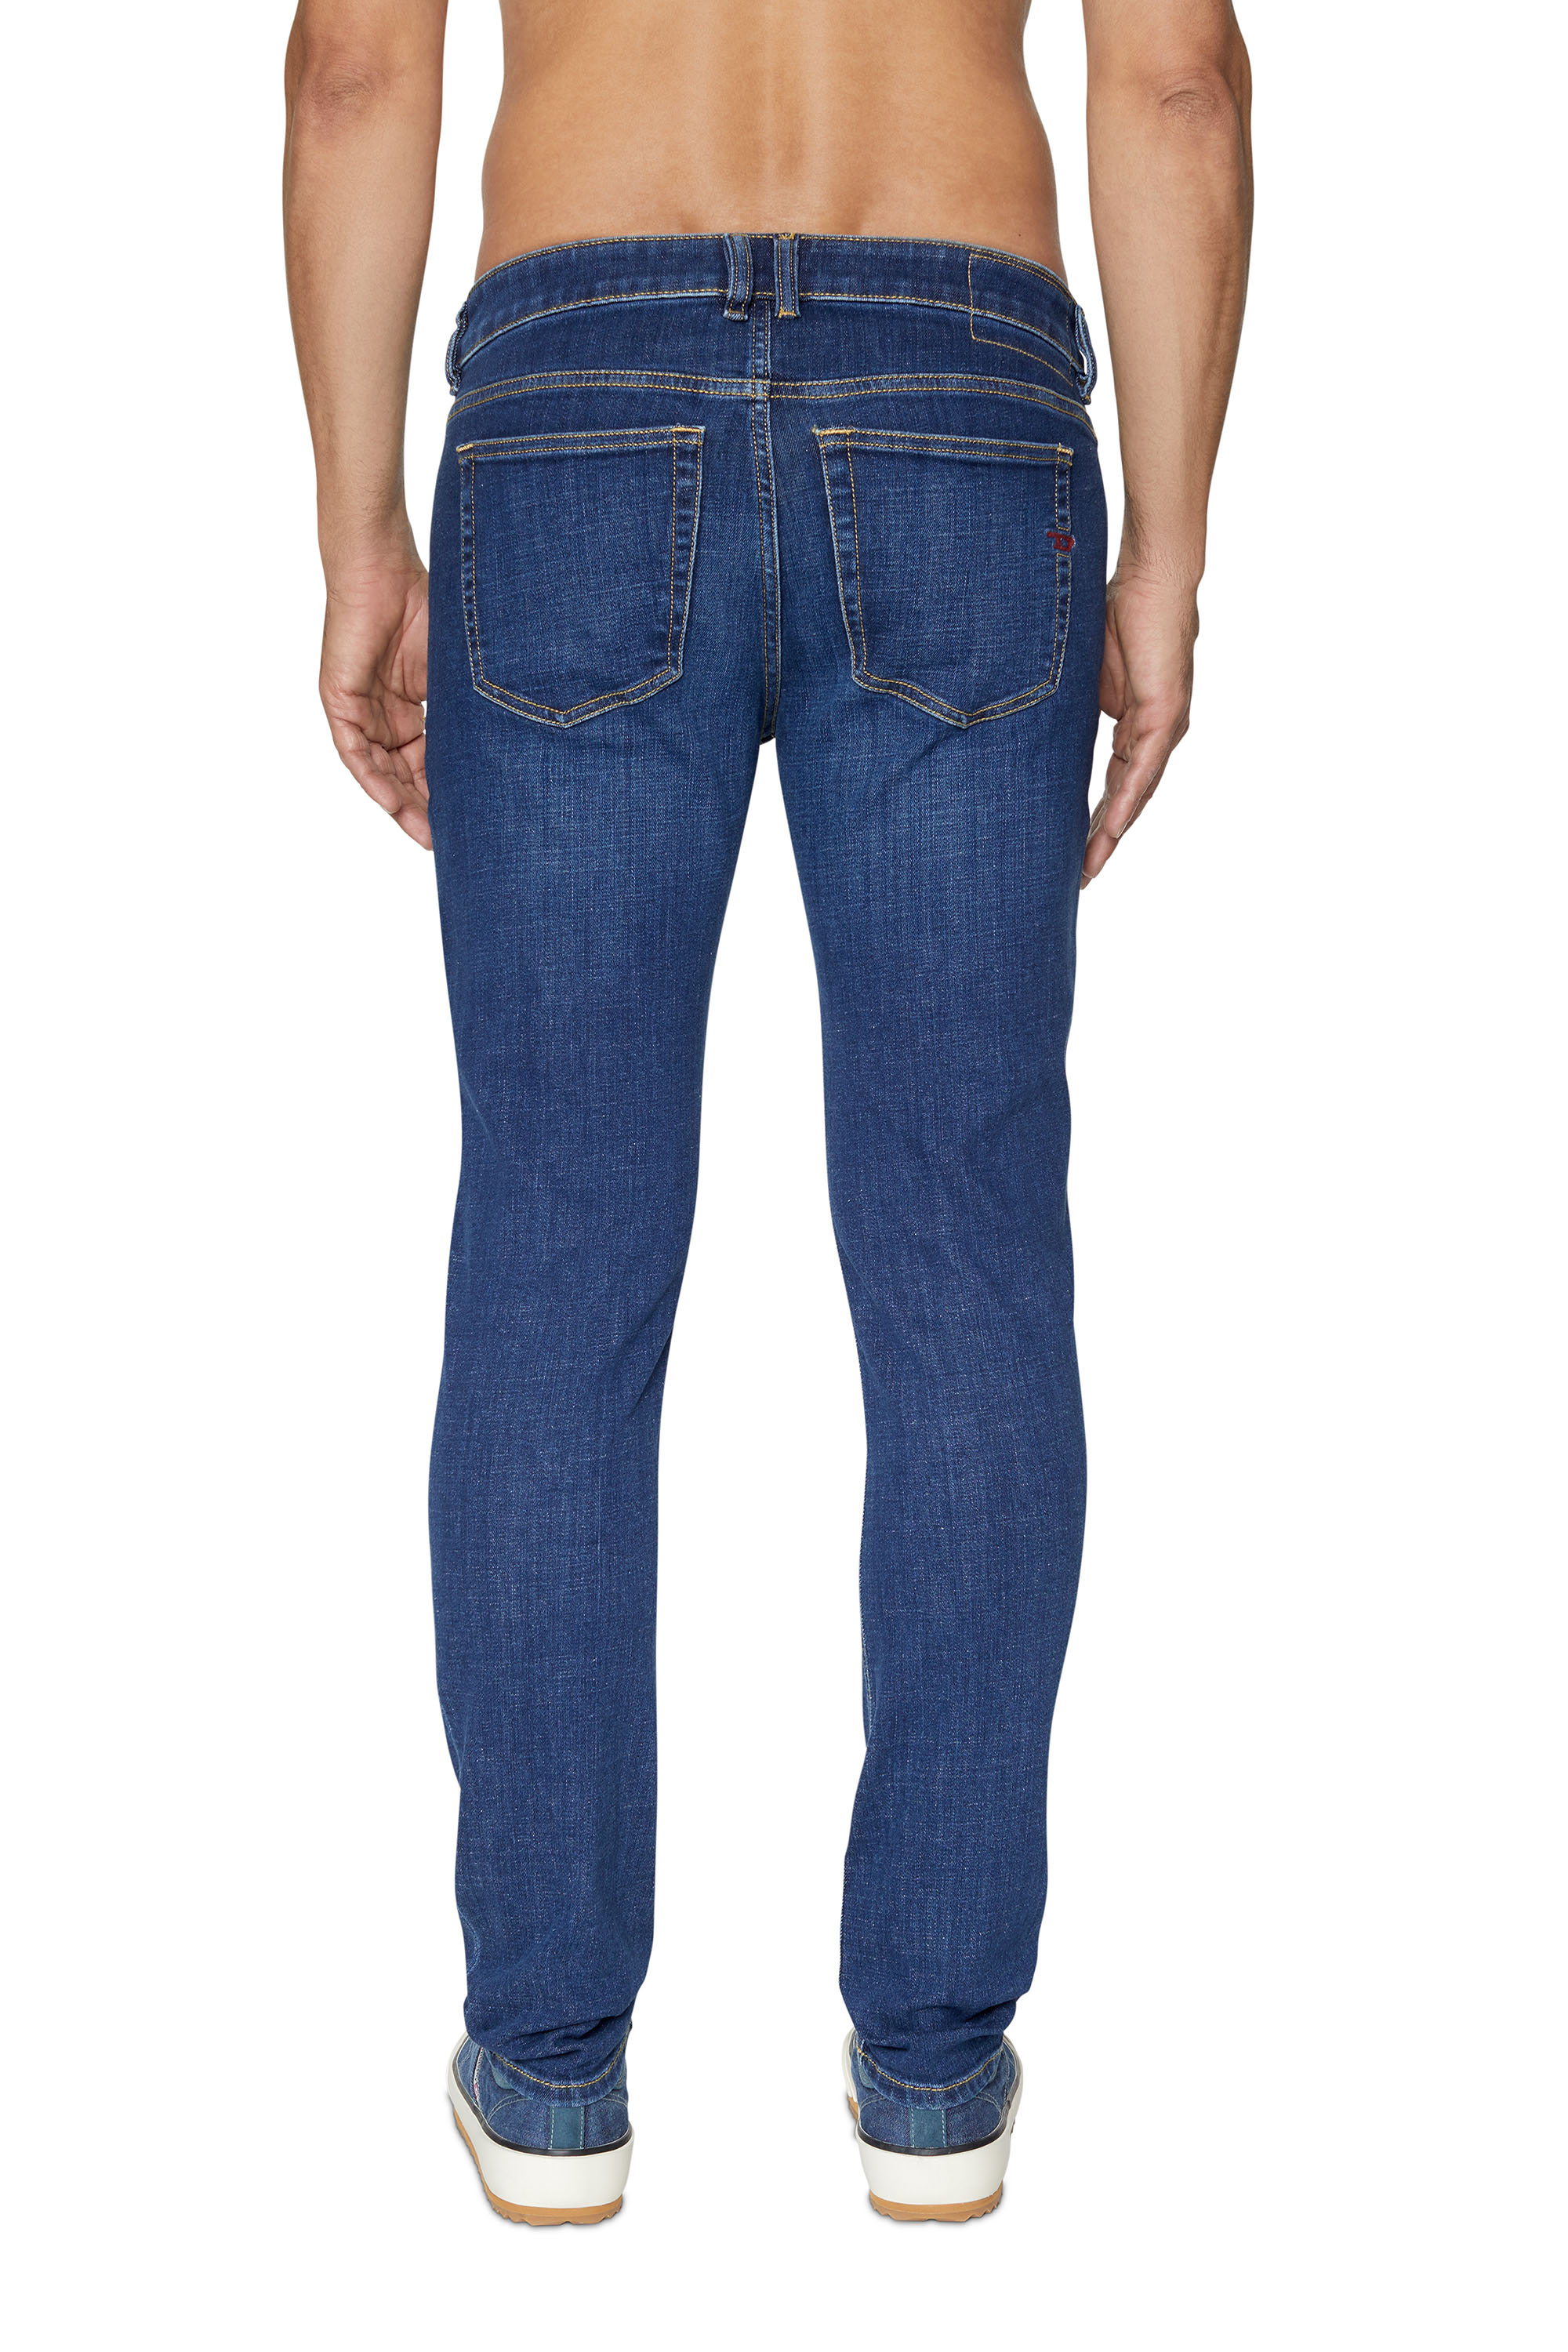 Diesel - Male Skinny Jeans 1979 Sleenker 09B98, Dark Blue - Image 4